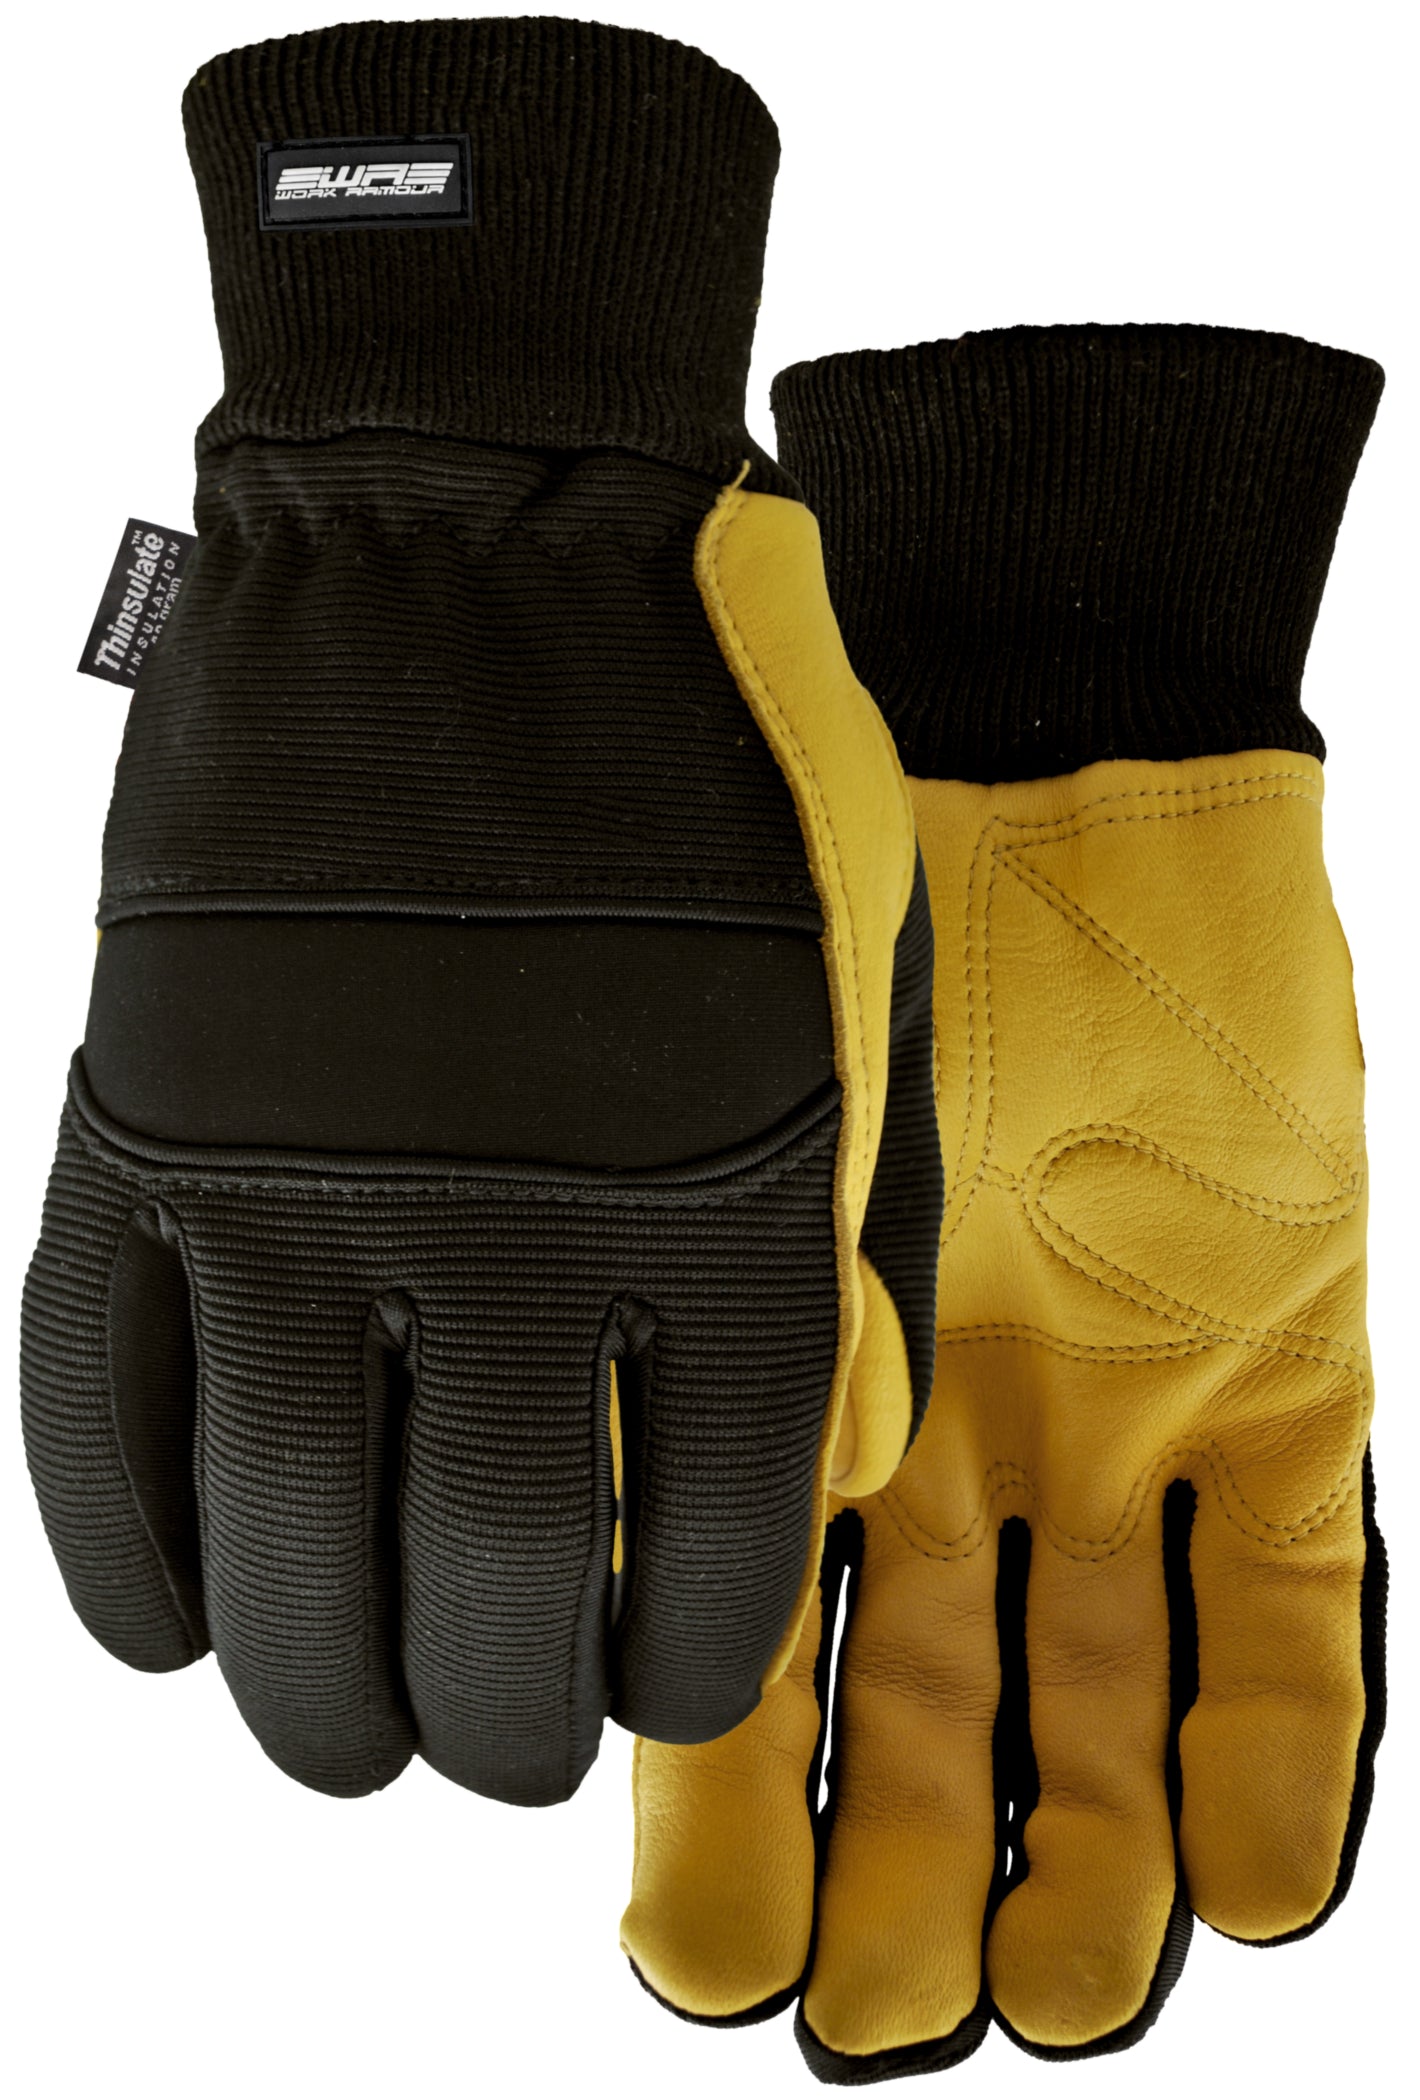 Watson 9013 Rachet Gloves